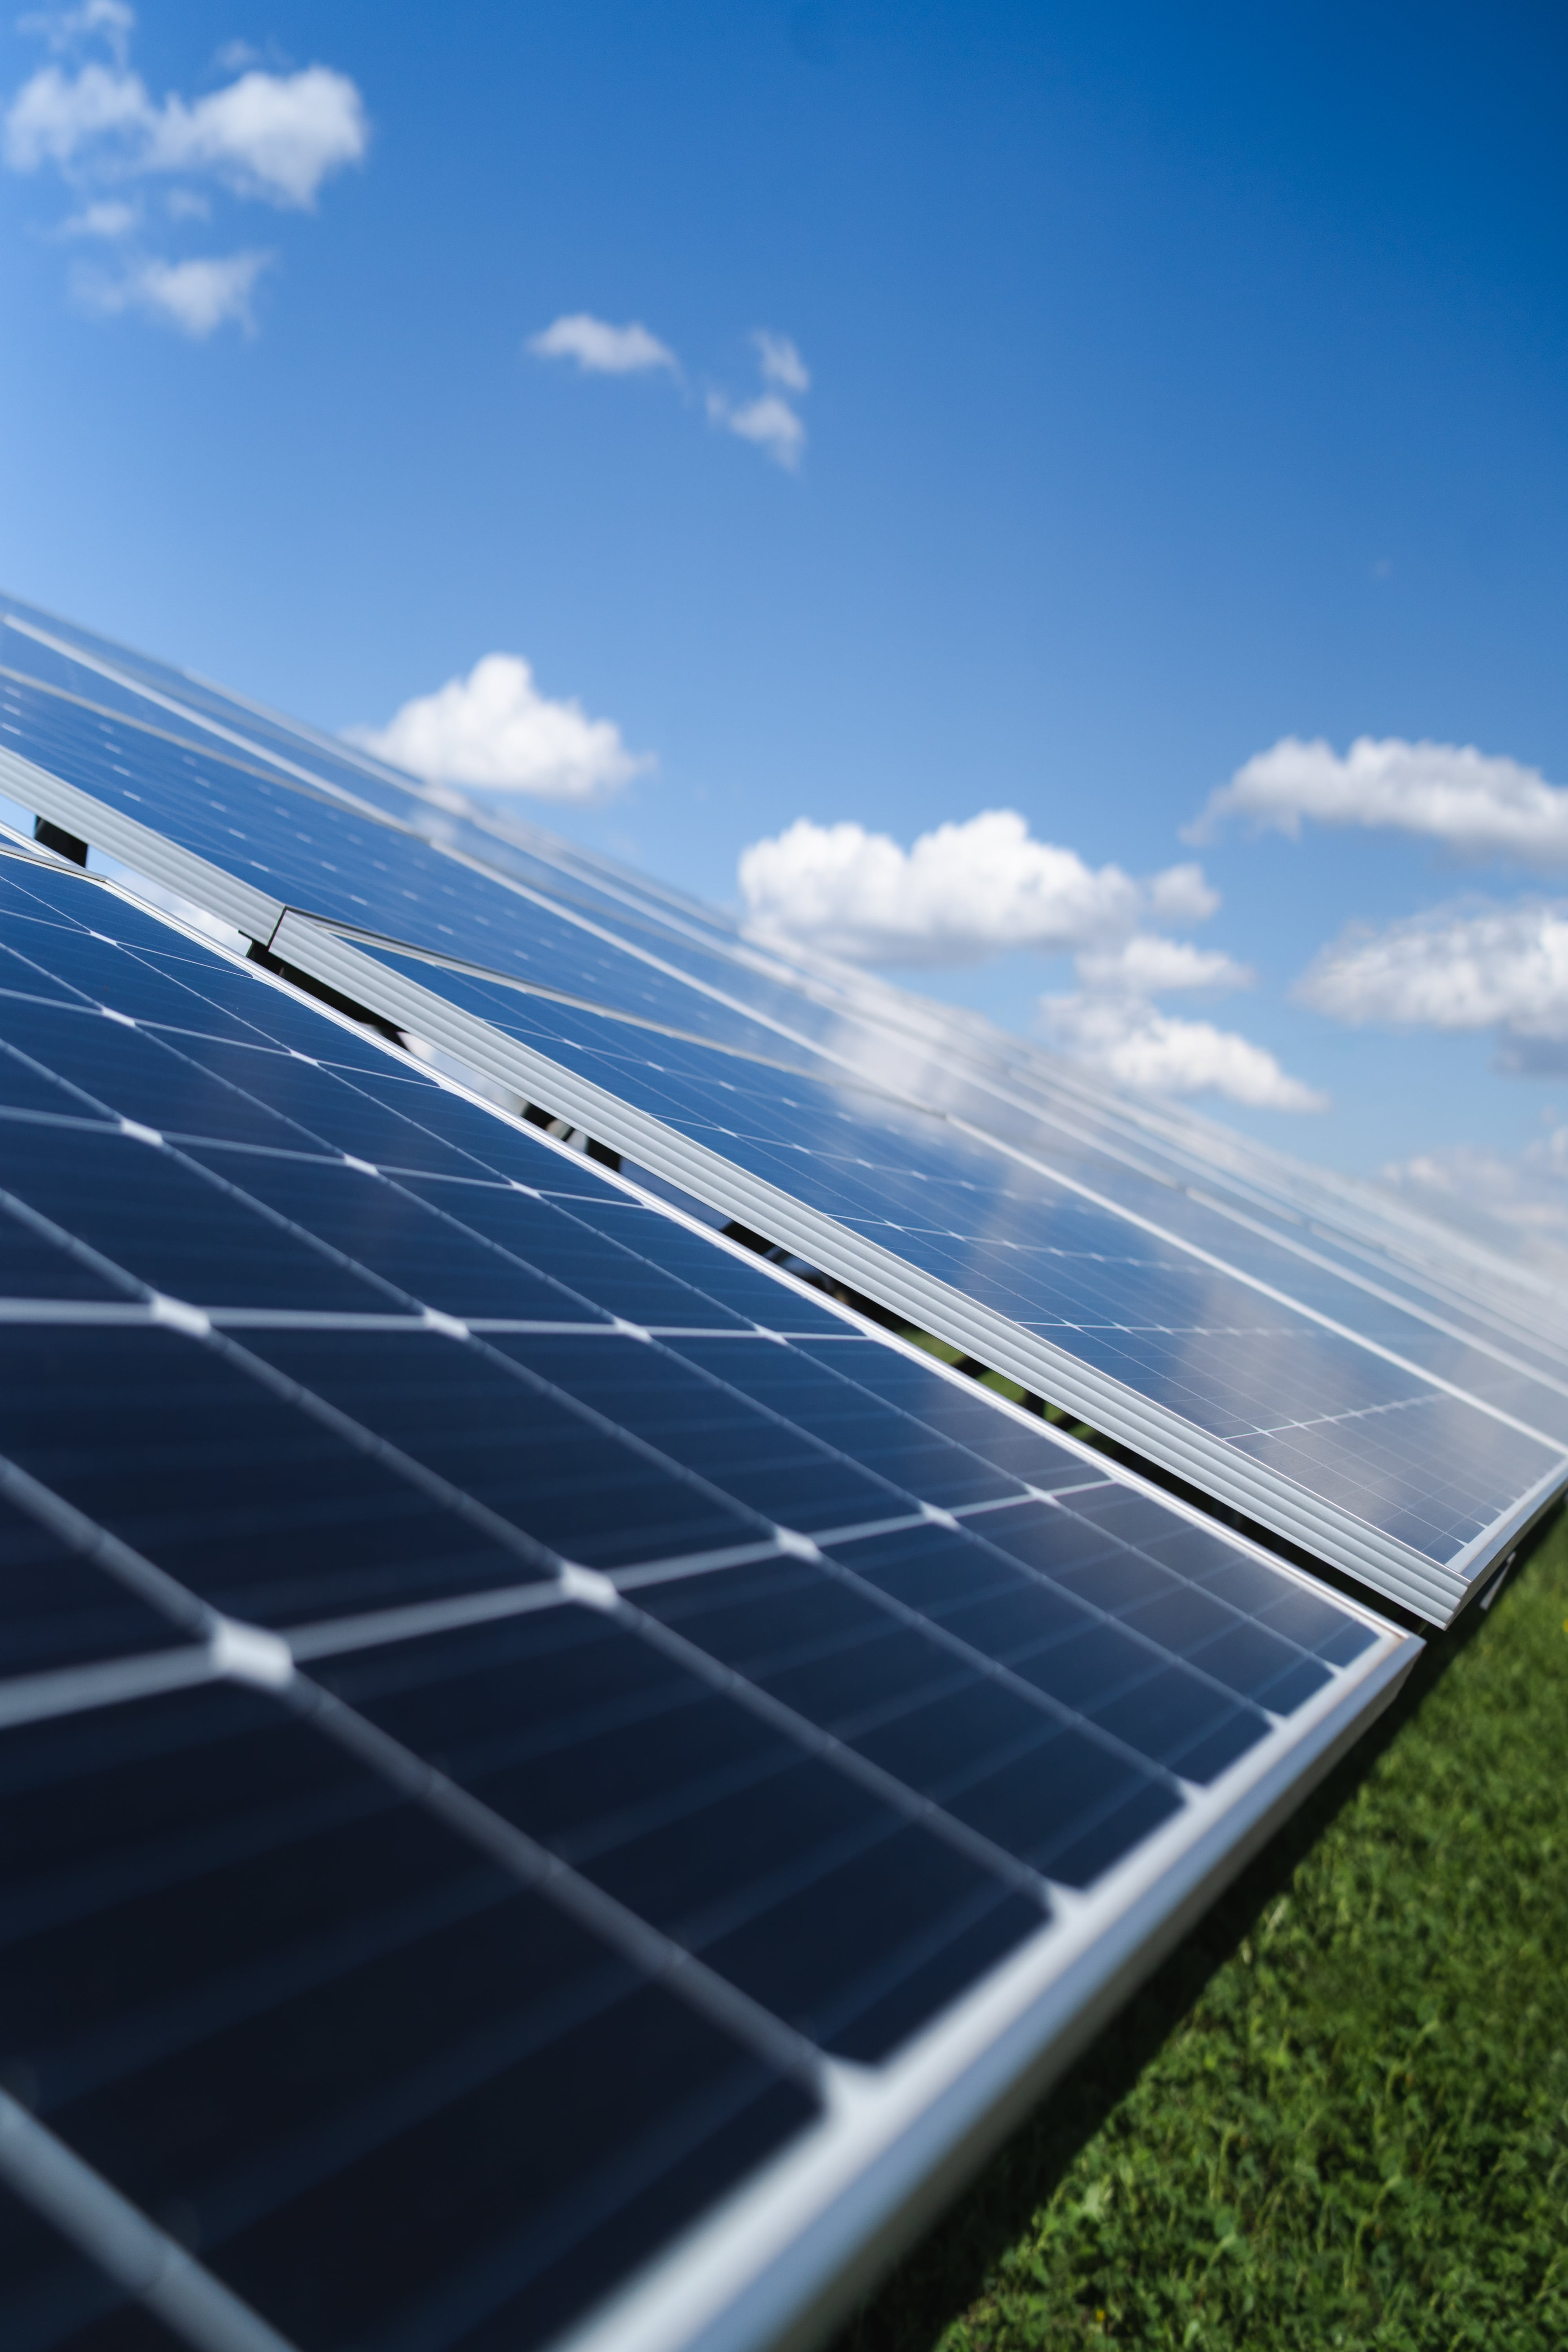 Inversor solar (fotovoltaico): ¿qué es y cómo funciona? 